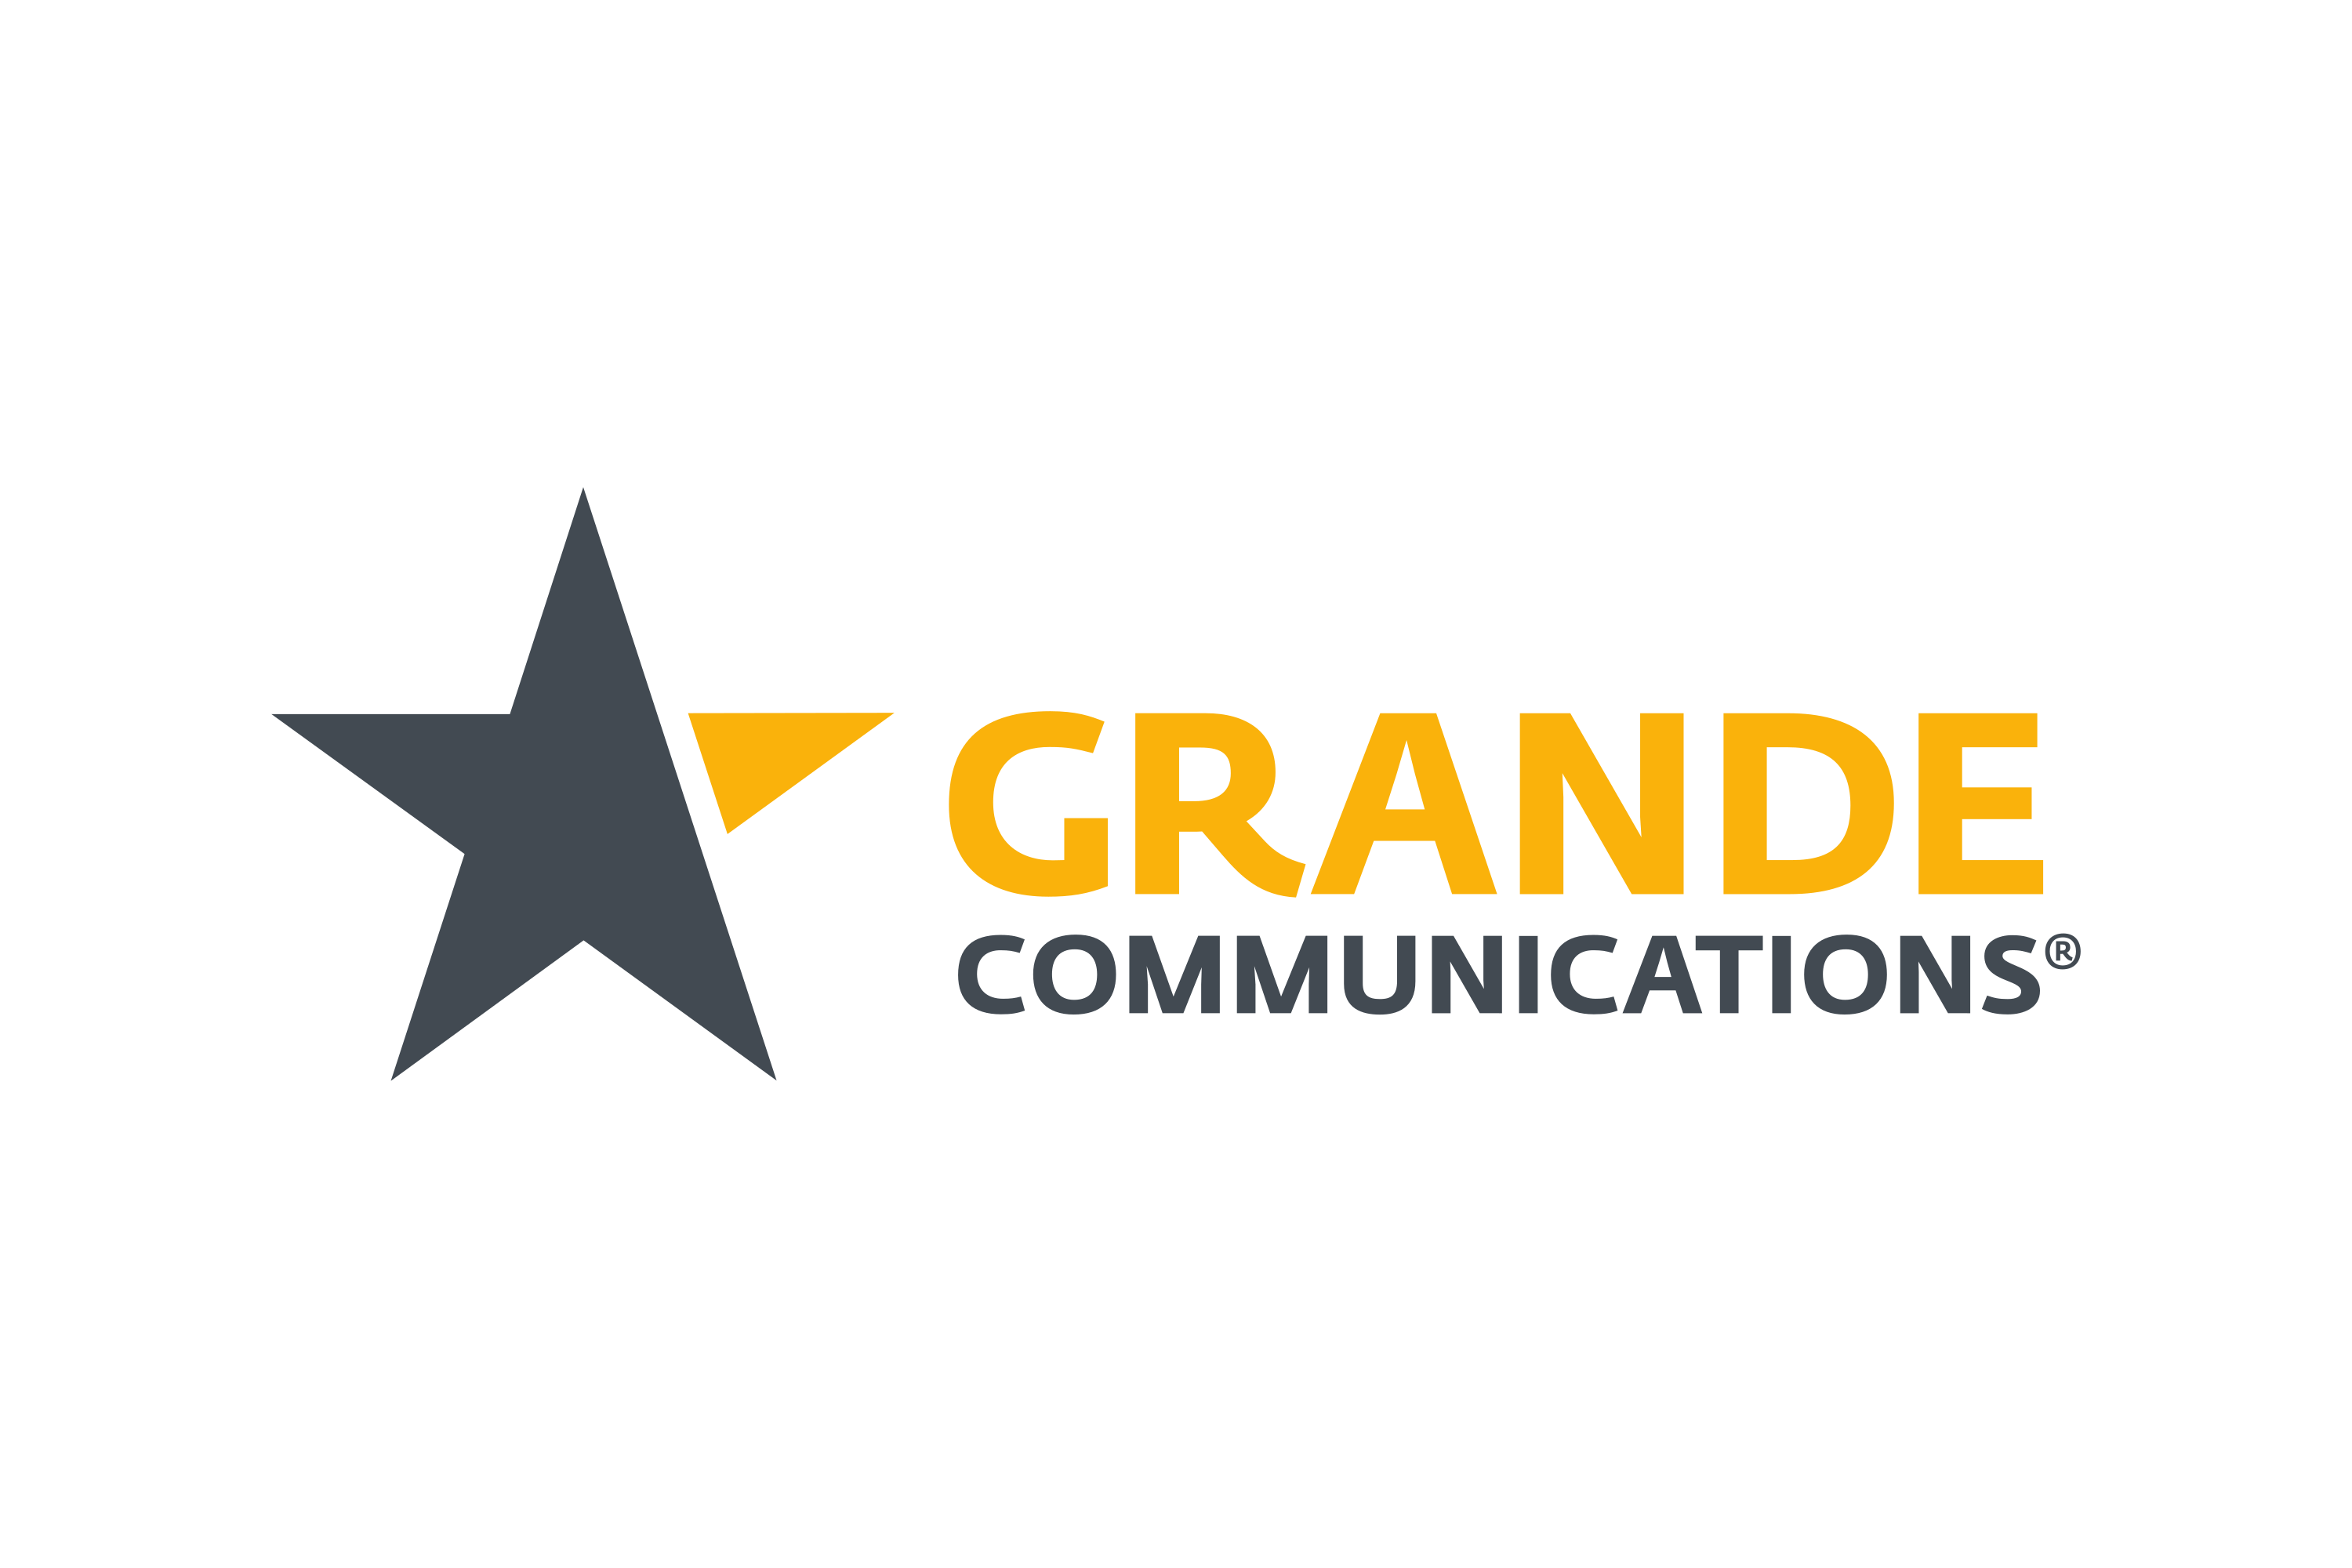 Download Grande Communications Logo in SVG Vector or PNG File Format